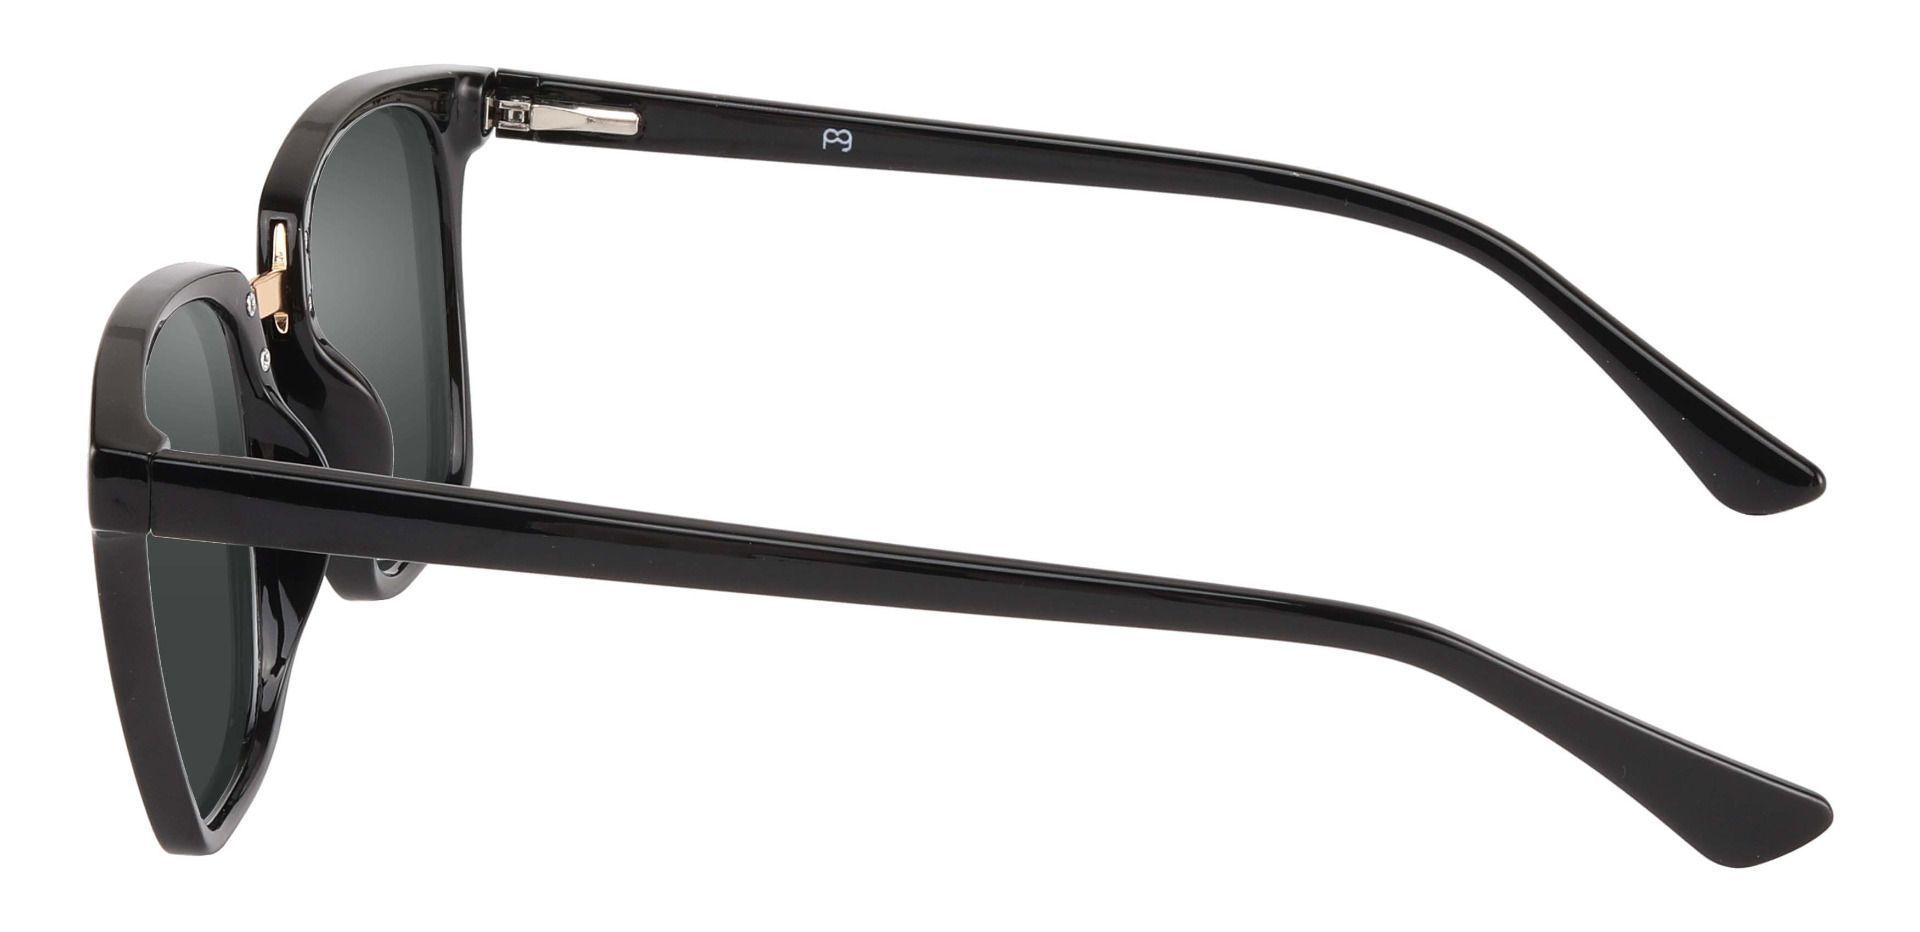 Delta Square Non-Rx Sunglasses - Black Frame With Gray Lenses